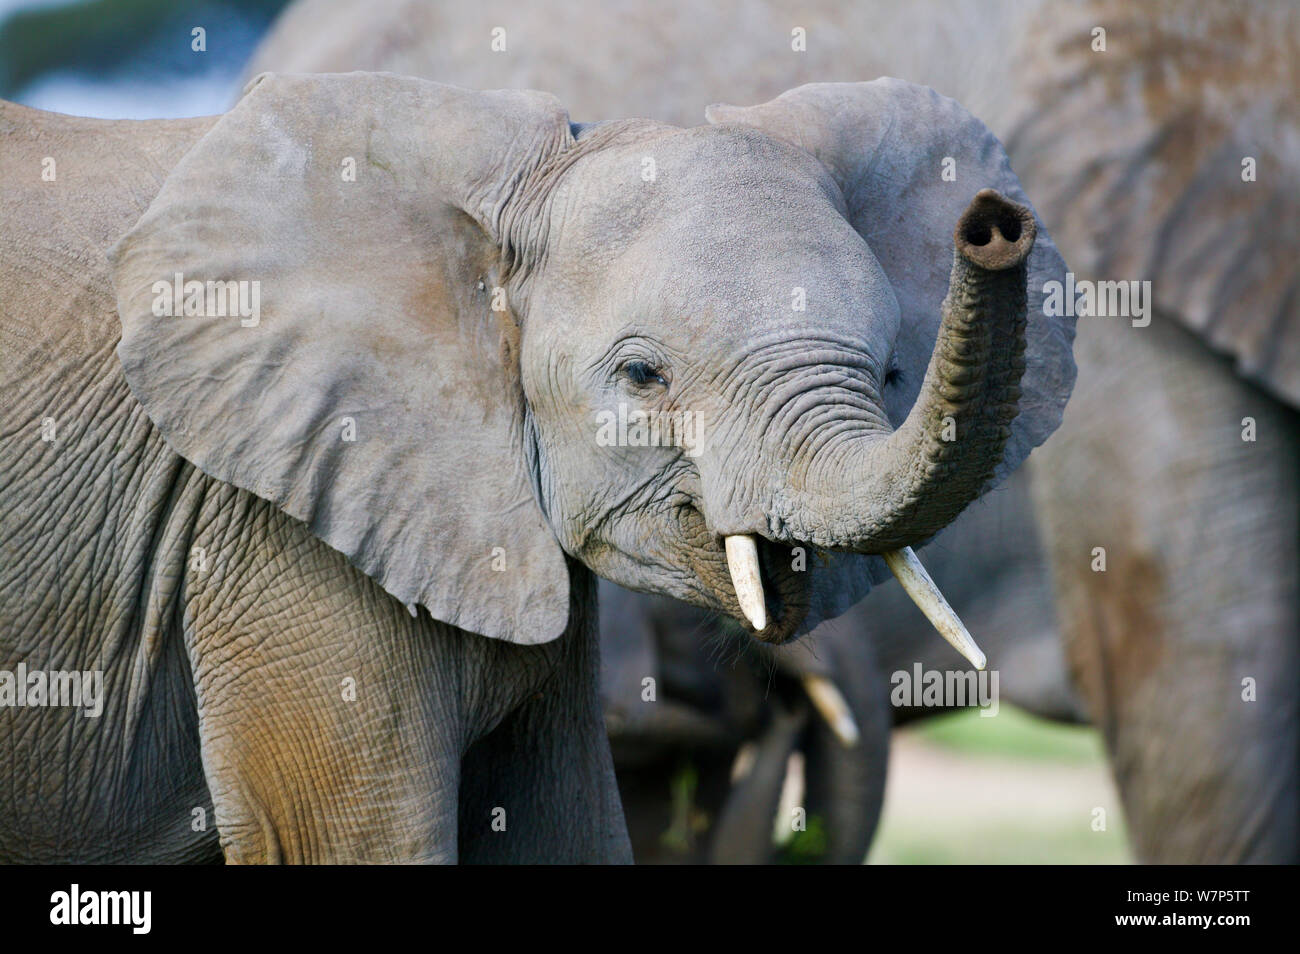 L'éléphant africain (Loxodonta africana) odeur juvénile l'air. Masai-Mara Game Reserve, Kenya. Banque D'Images